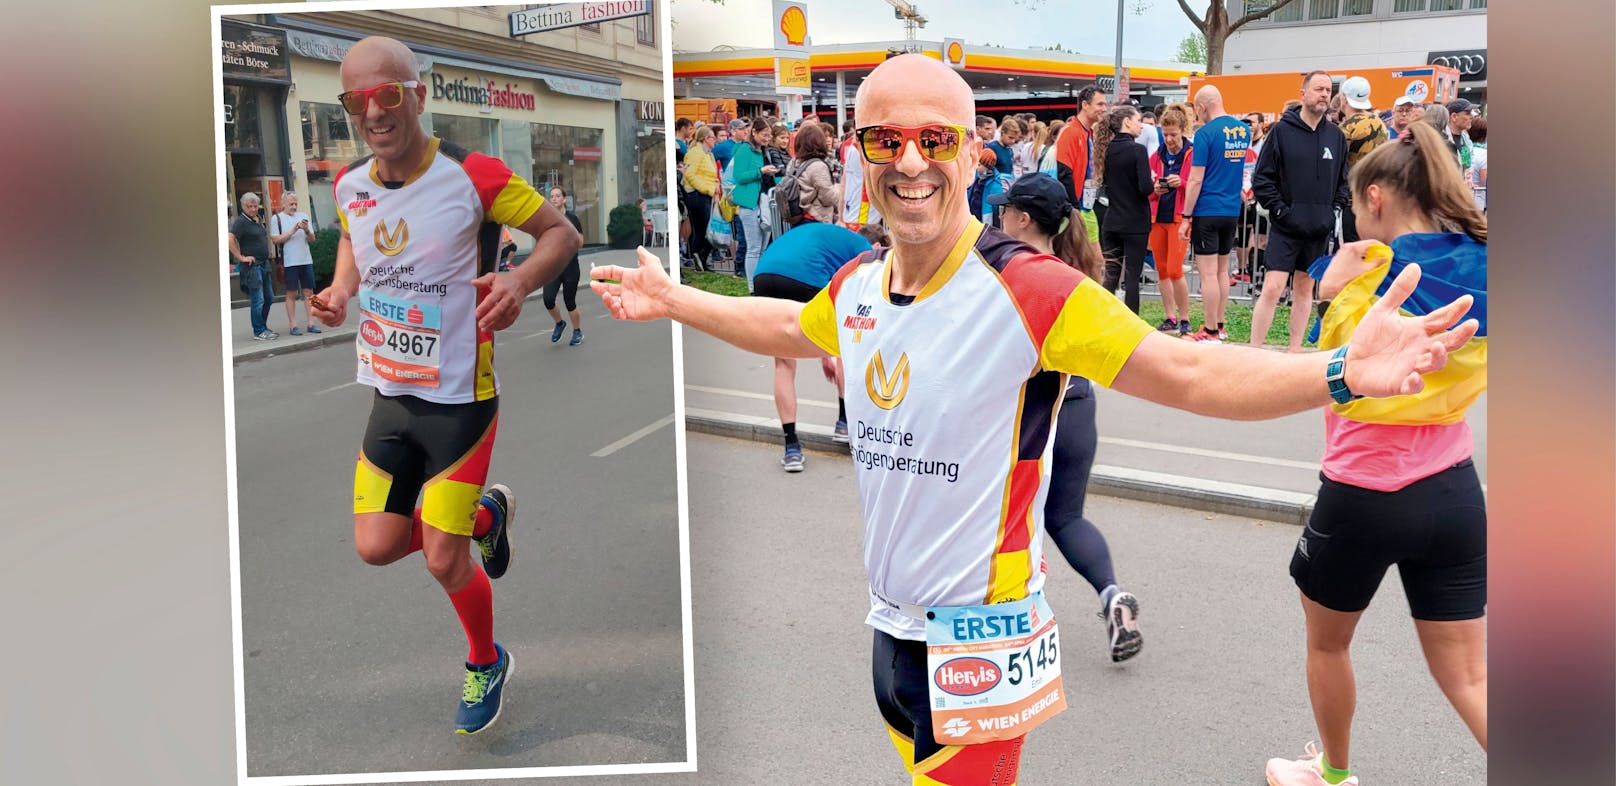 Extremläufer Emin da Silva plant eine kuriose Aktion beim 40. Vienna City Marathon